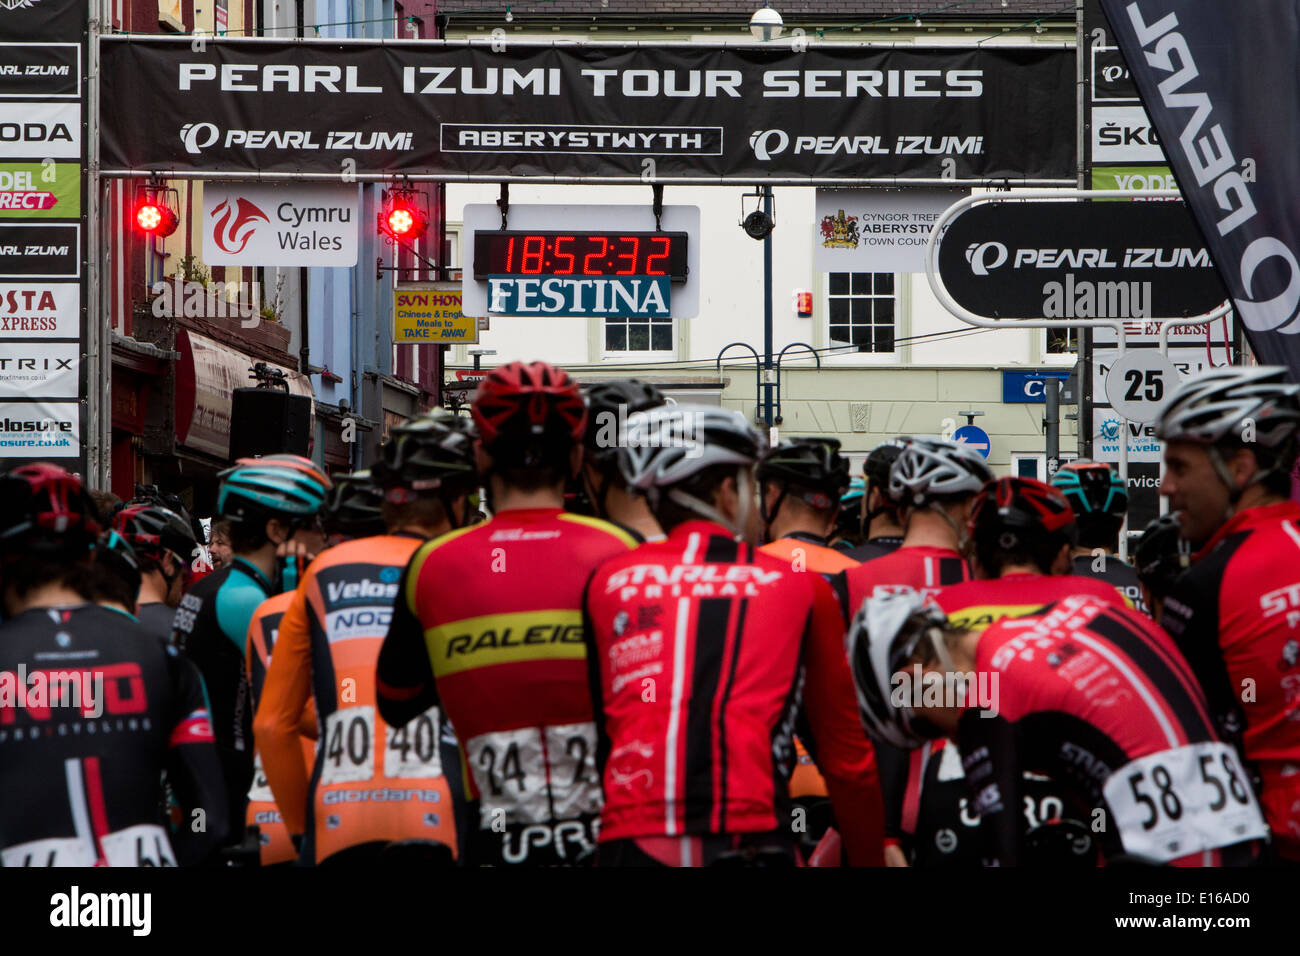 Die Reiter sammeln an der Startlinie vor der Pearl Izumi Tour Serie Runde 4 Rennen in Aberystwyth, Großbritannien Stockfoto